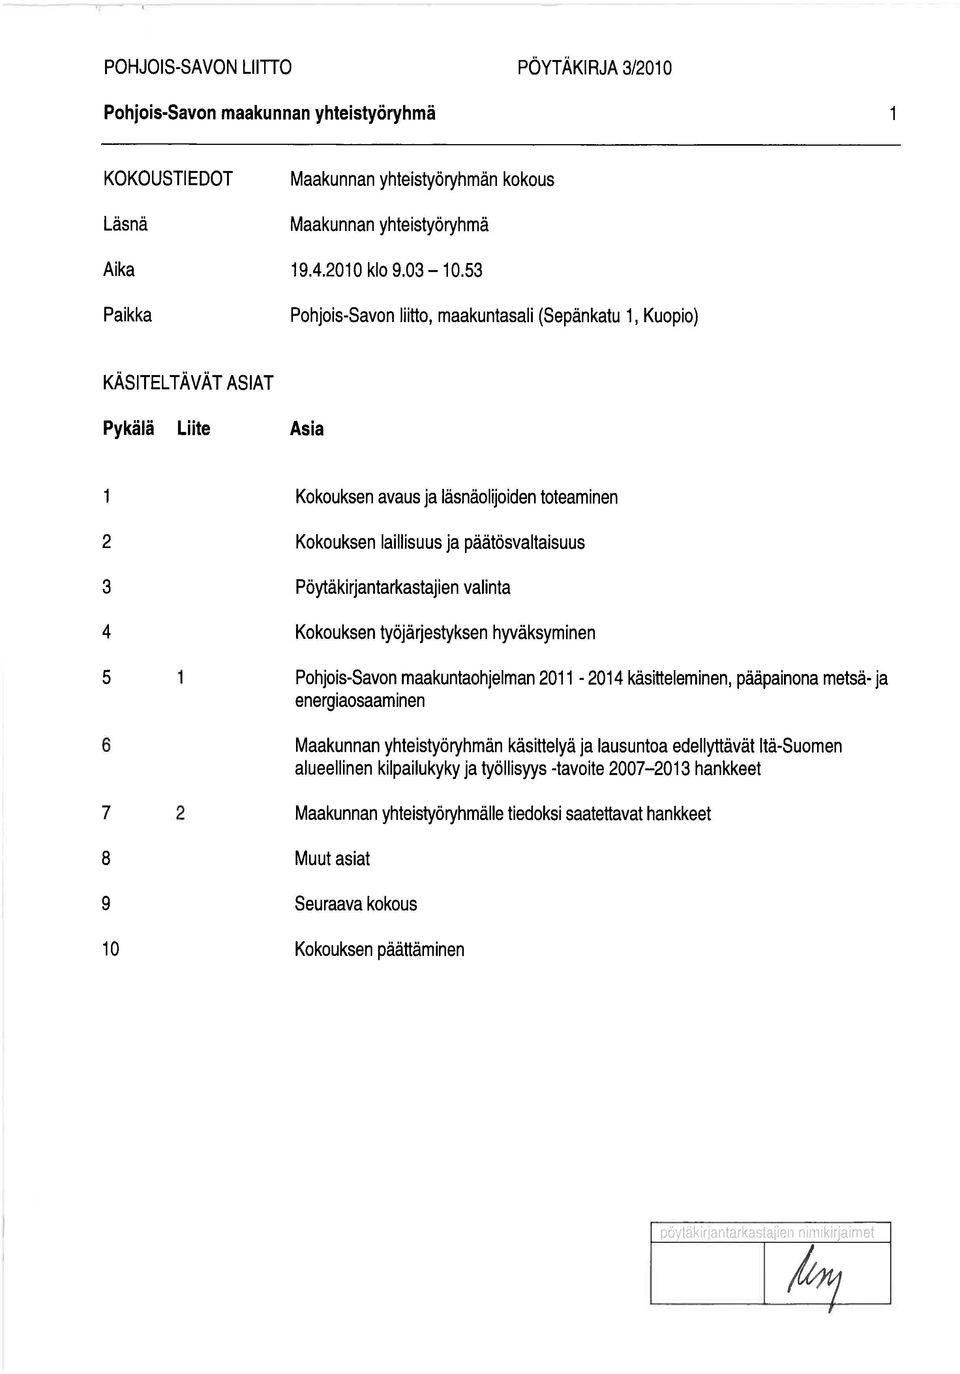 Pöytäkirjantarkastajien valinta Kokouksen työjärjestyksen hyväksyminen Pohjois-Savon maakuntaohjelman 2011-2014 käsitteleminen, pääpainona metsä- ja energiaosaaminen Maakunnan yhteistyöryhmän